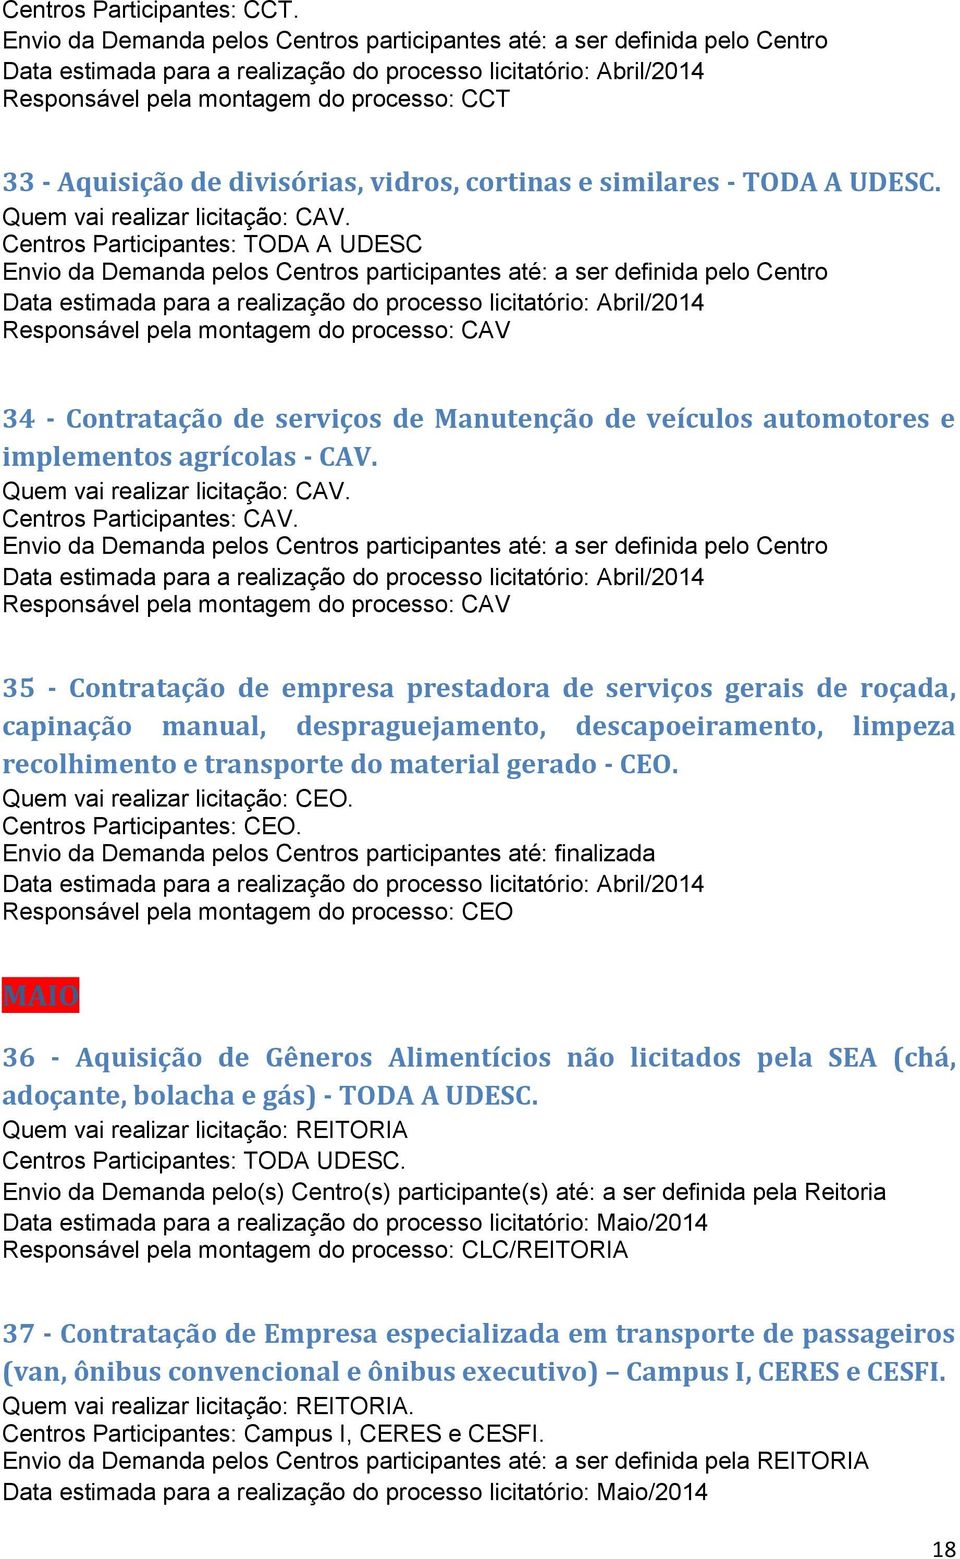 Centros Participantes: TODA A UDESC Data estimada para a realização do processo licitatório: Abril/2014 Responsável pela montagem do processo: CAV 34 - Contratação de serviços de Manutenção de